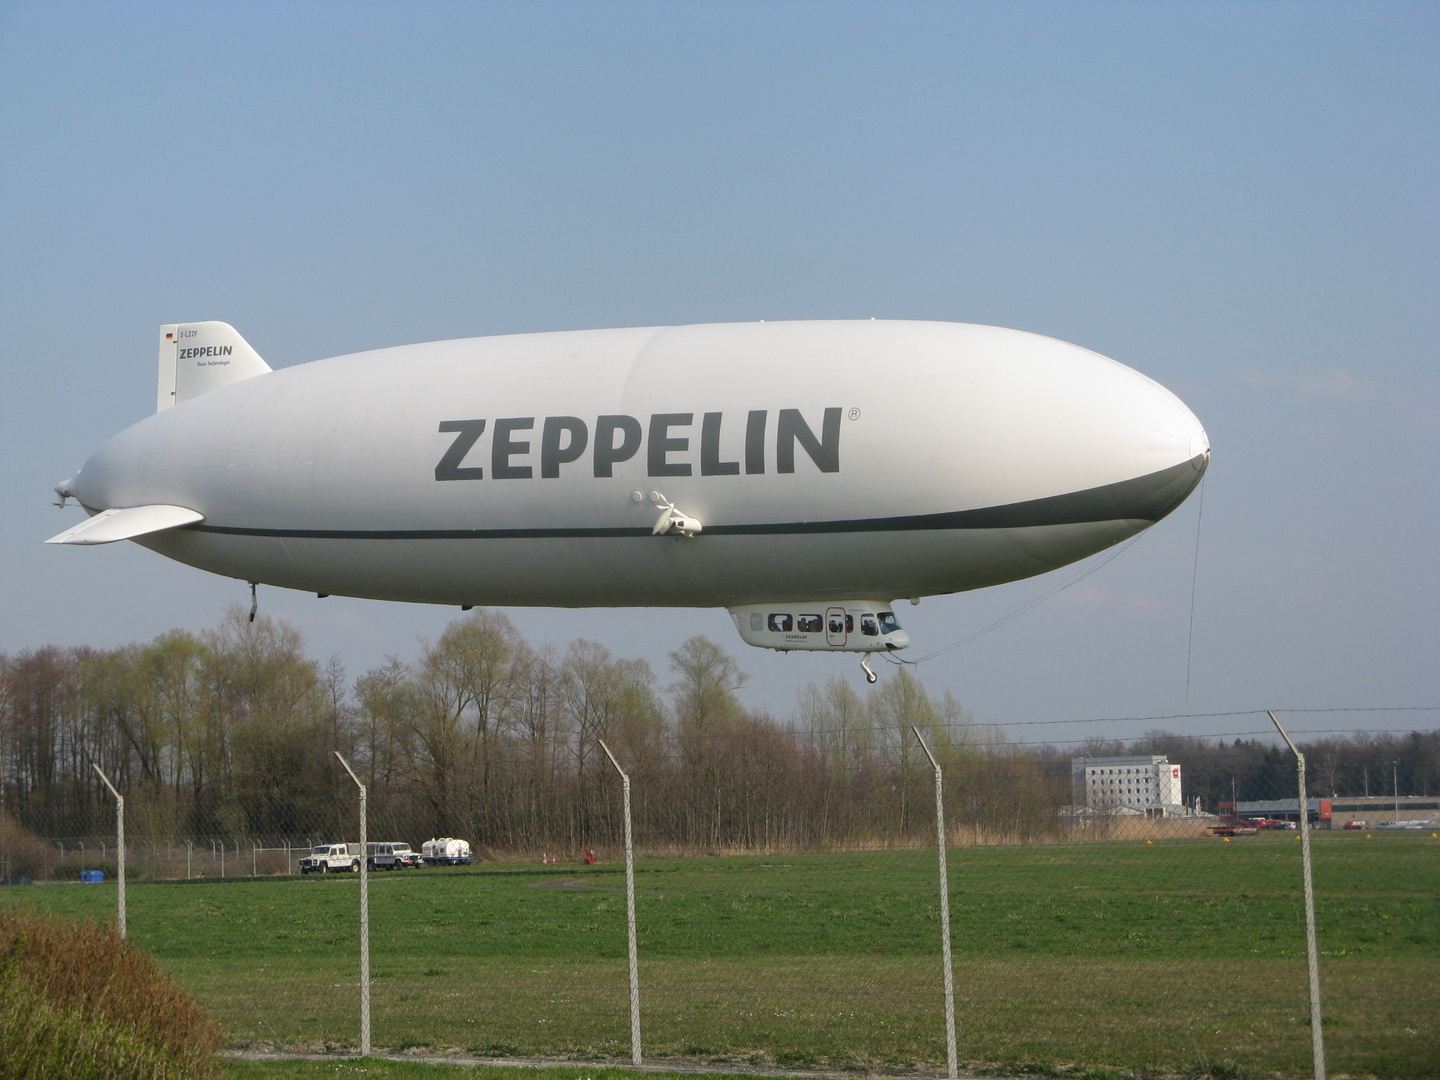 Zeppelin am Flughafen Friedrichshafen